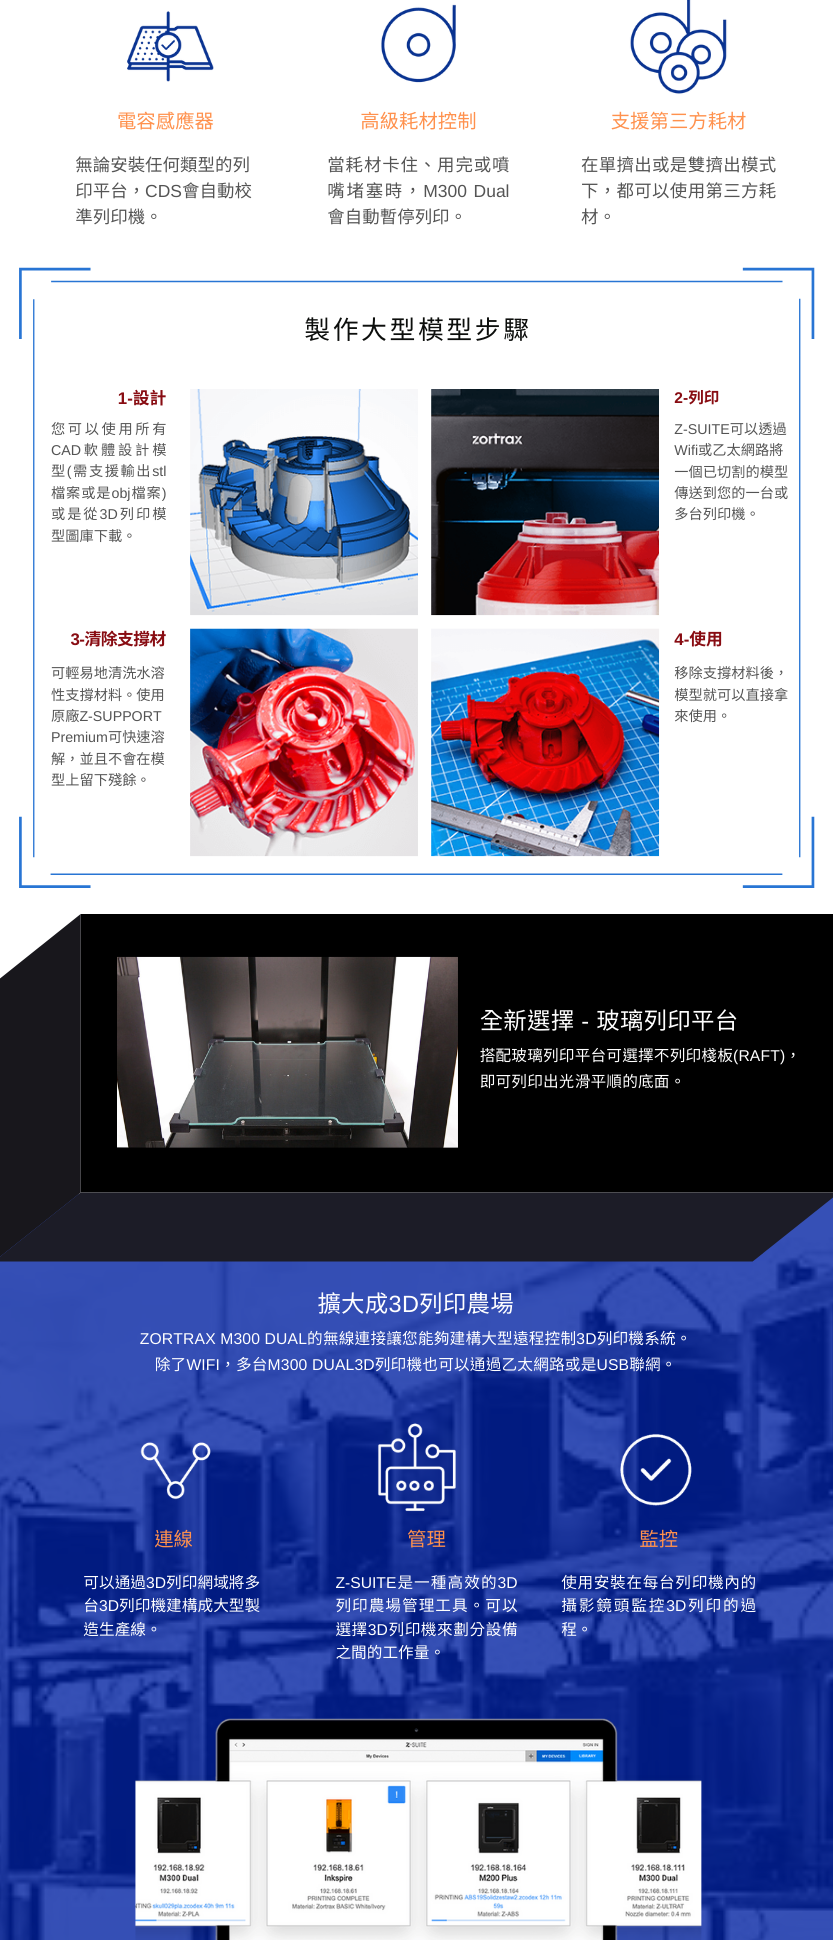 zortrax M300 Dual 雙噴頭大尺寸3D列印機- 台灣總代理QTS品測科技